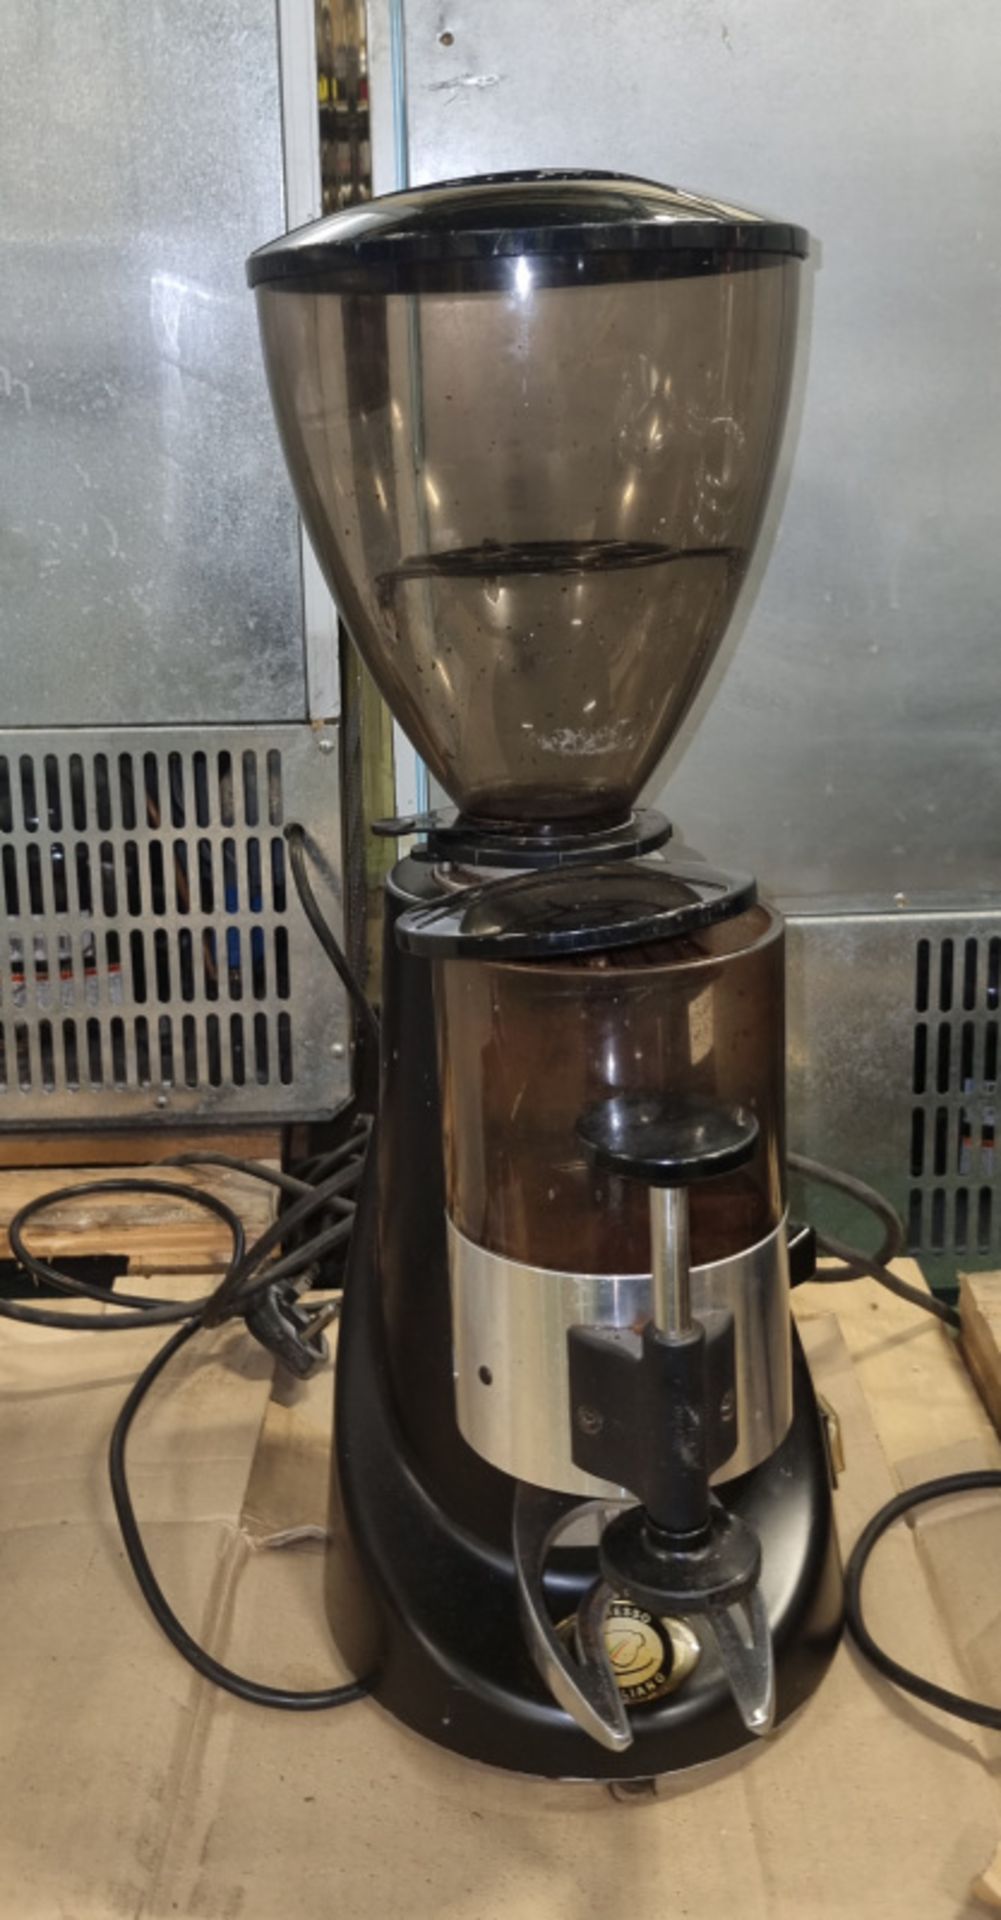 La Spaziale Astro coffee grinder - 230V